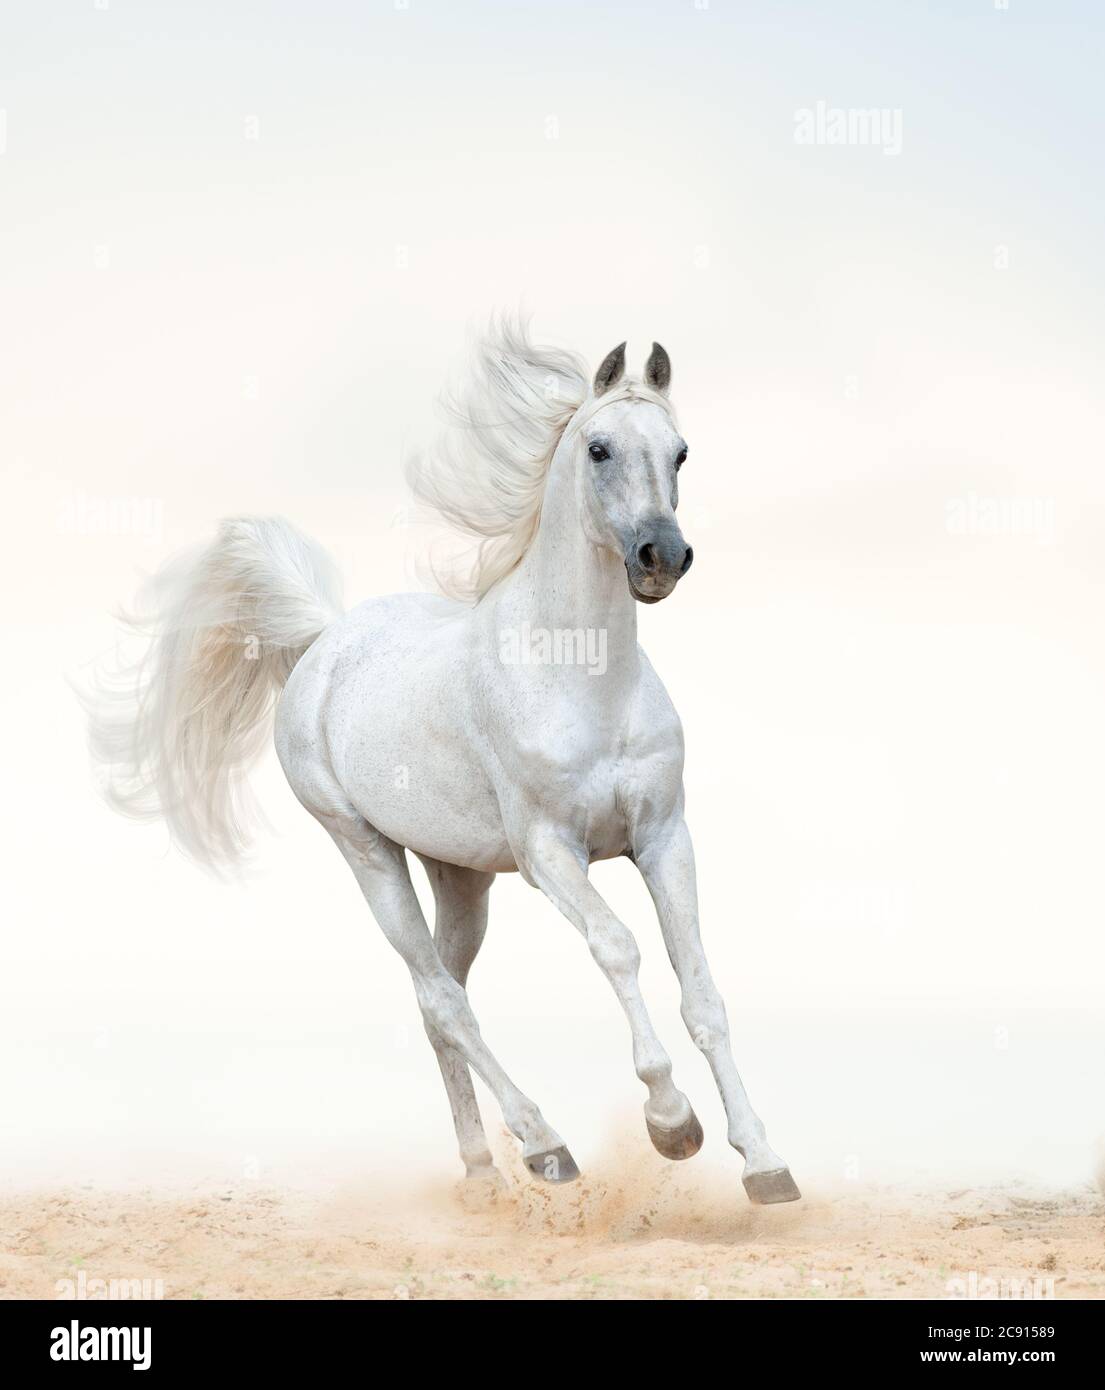 Schöner arabischer Hengst, der auf Freiheit läuft. Pastelltöne. Weißes arabisches Pferd am Meer. Galoppierendes weißes Pferd Stockfoto